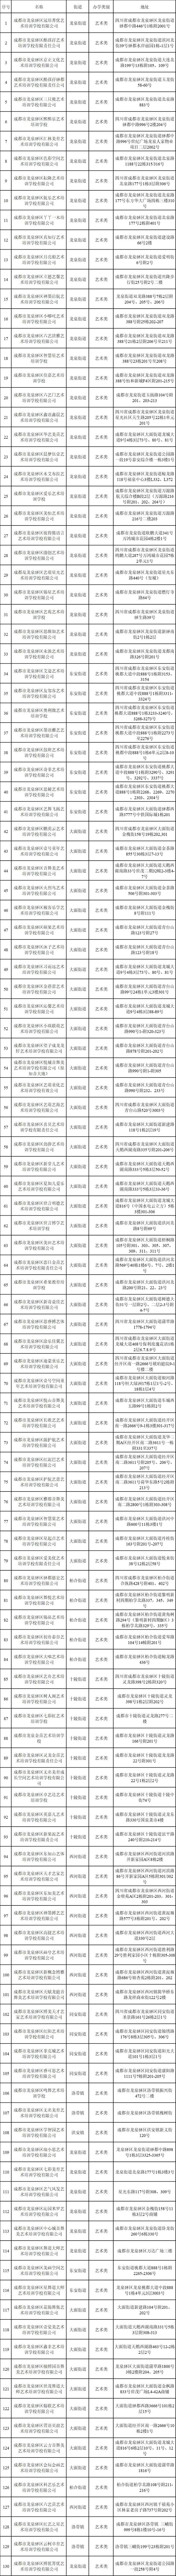 成都市龙泉驿区公布177所校外培训机构“白名单”